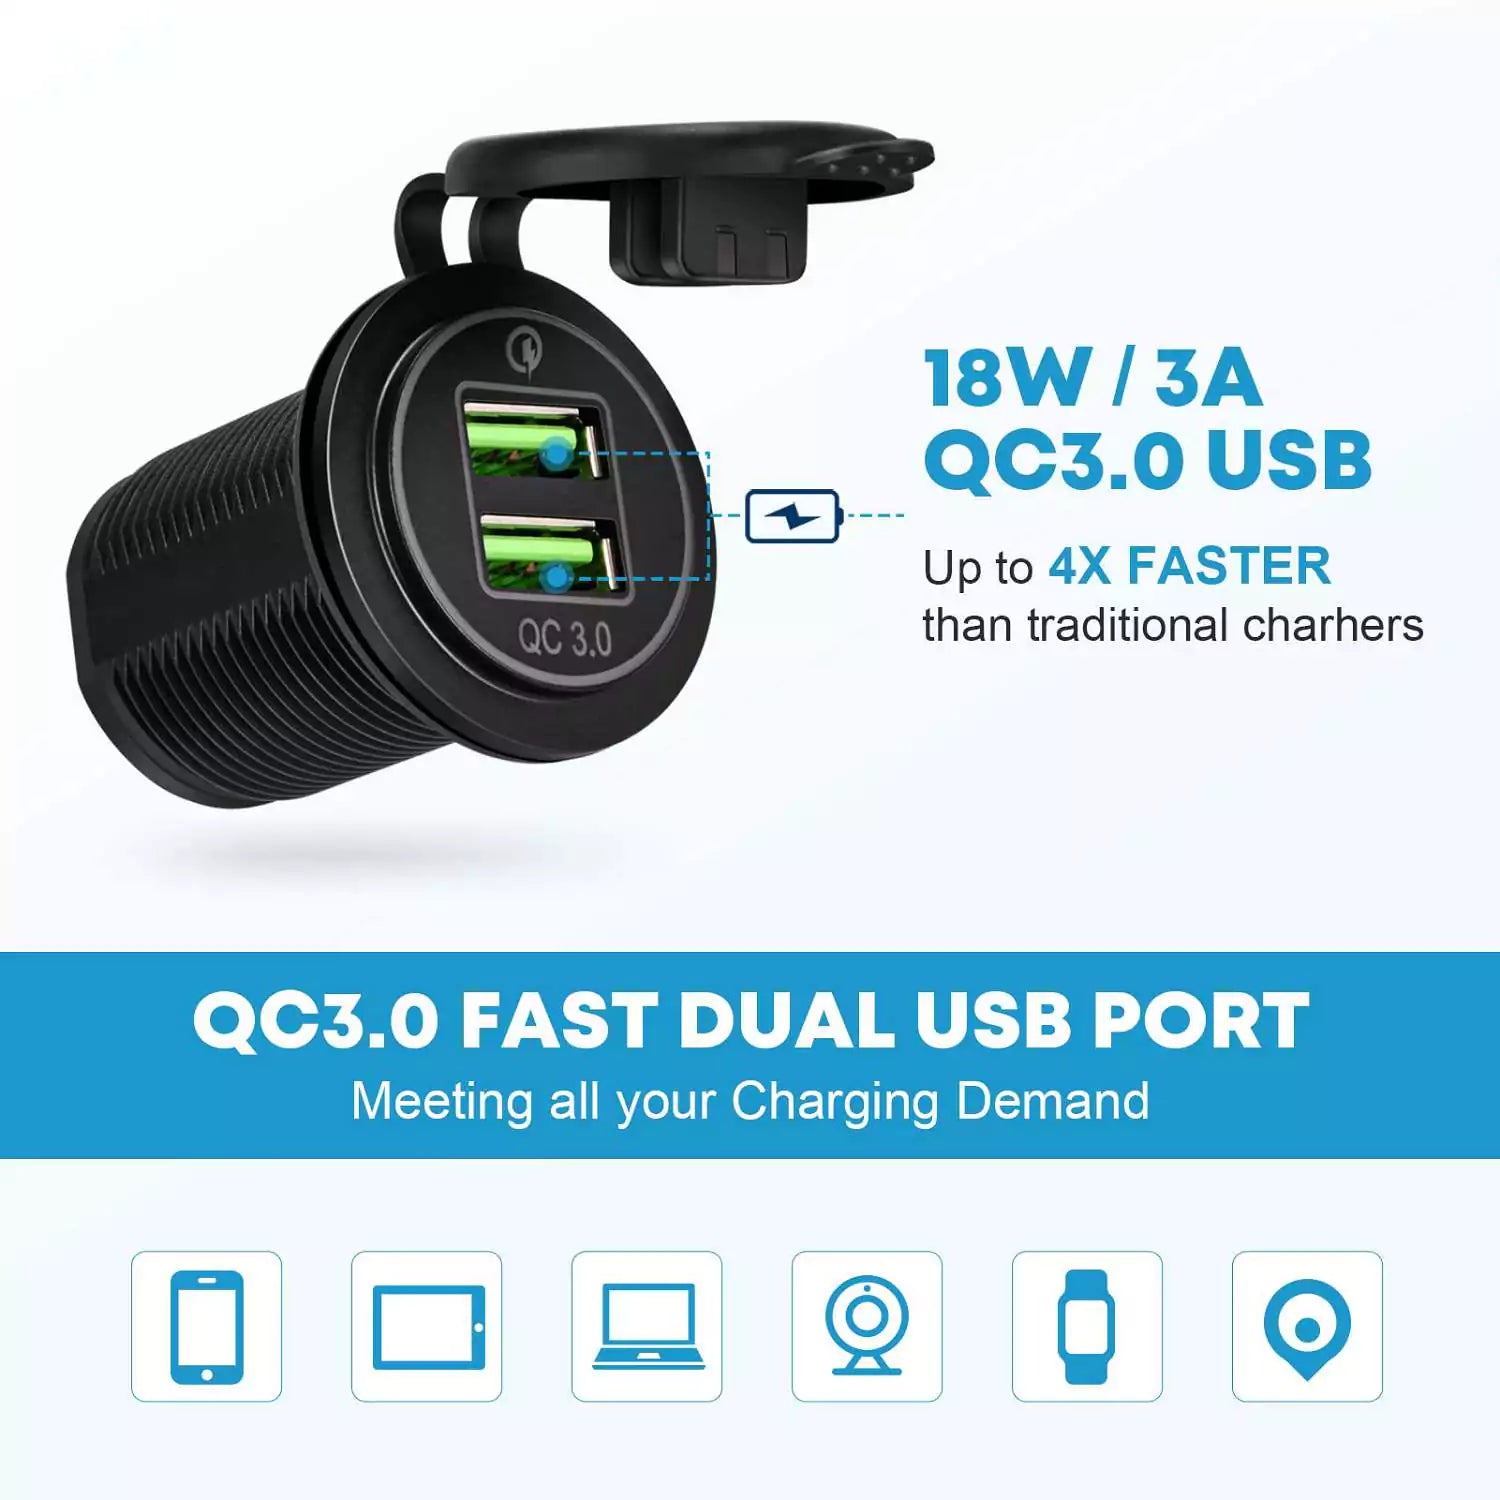 QC3.0 FAST DUAL USB PORT